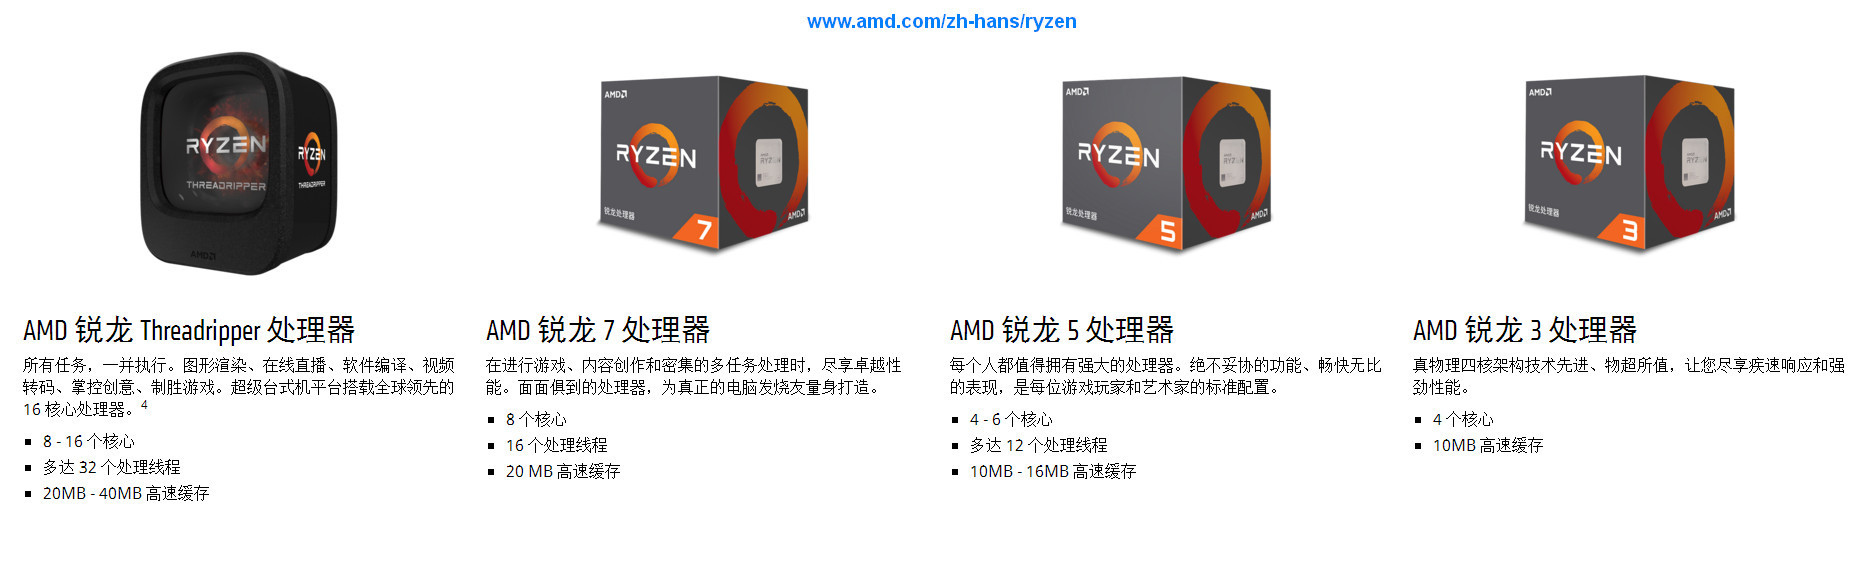 若何对待AMD Ryzen CPU系列在此时全线降价？